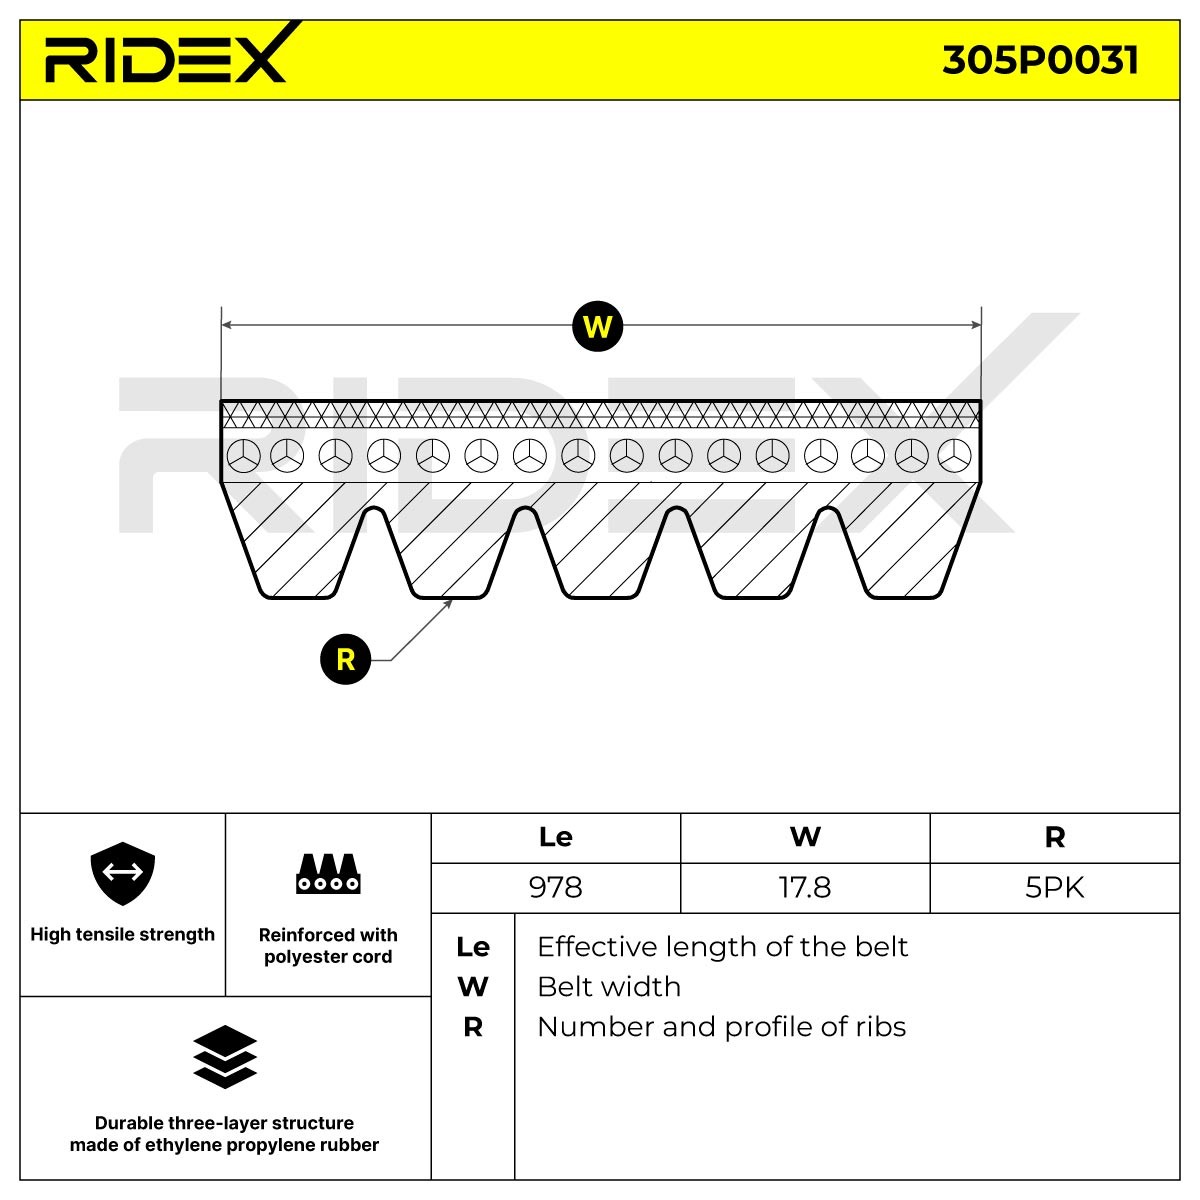 RIDEX Drive belt 305P0031